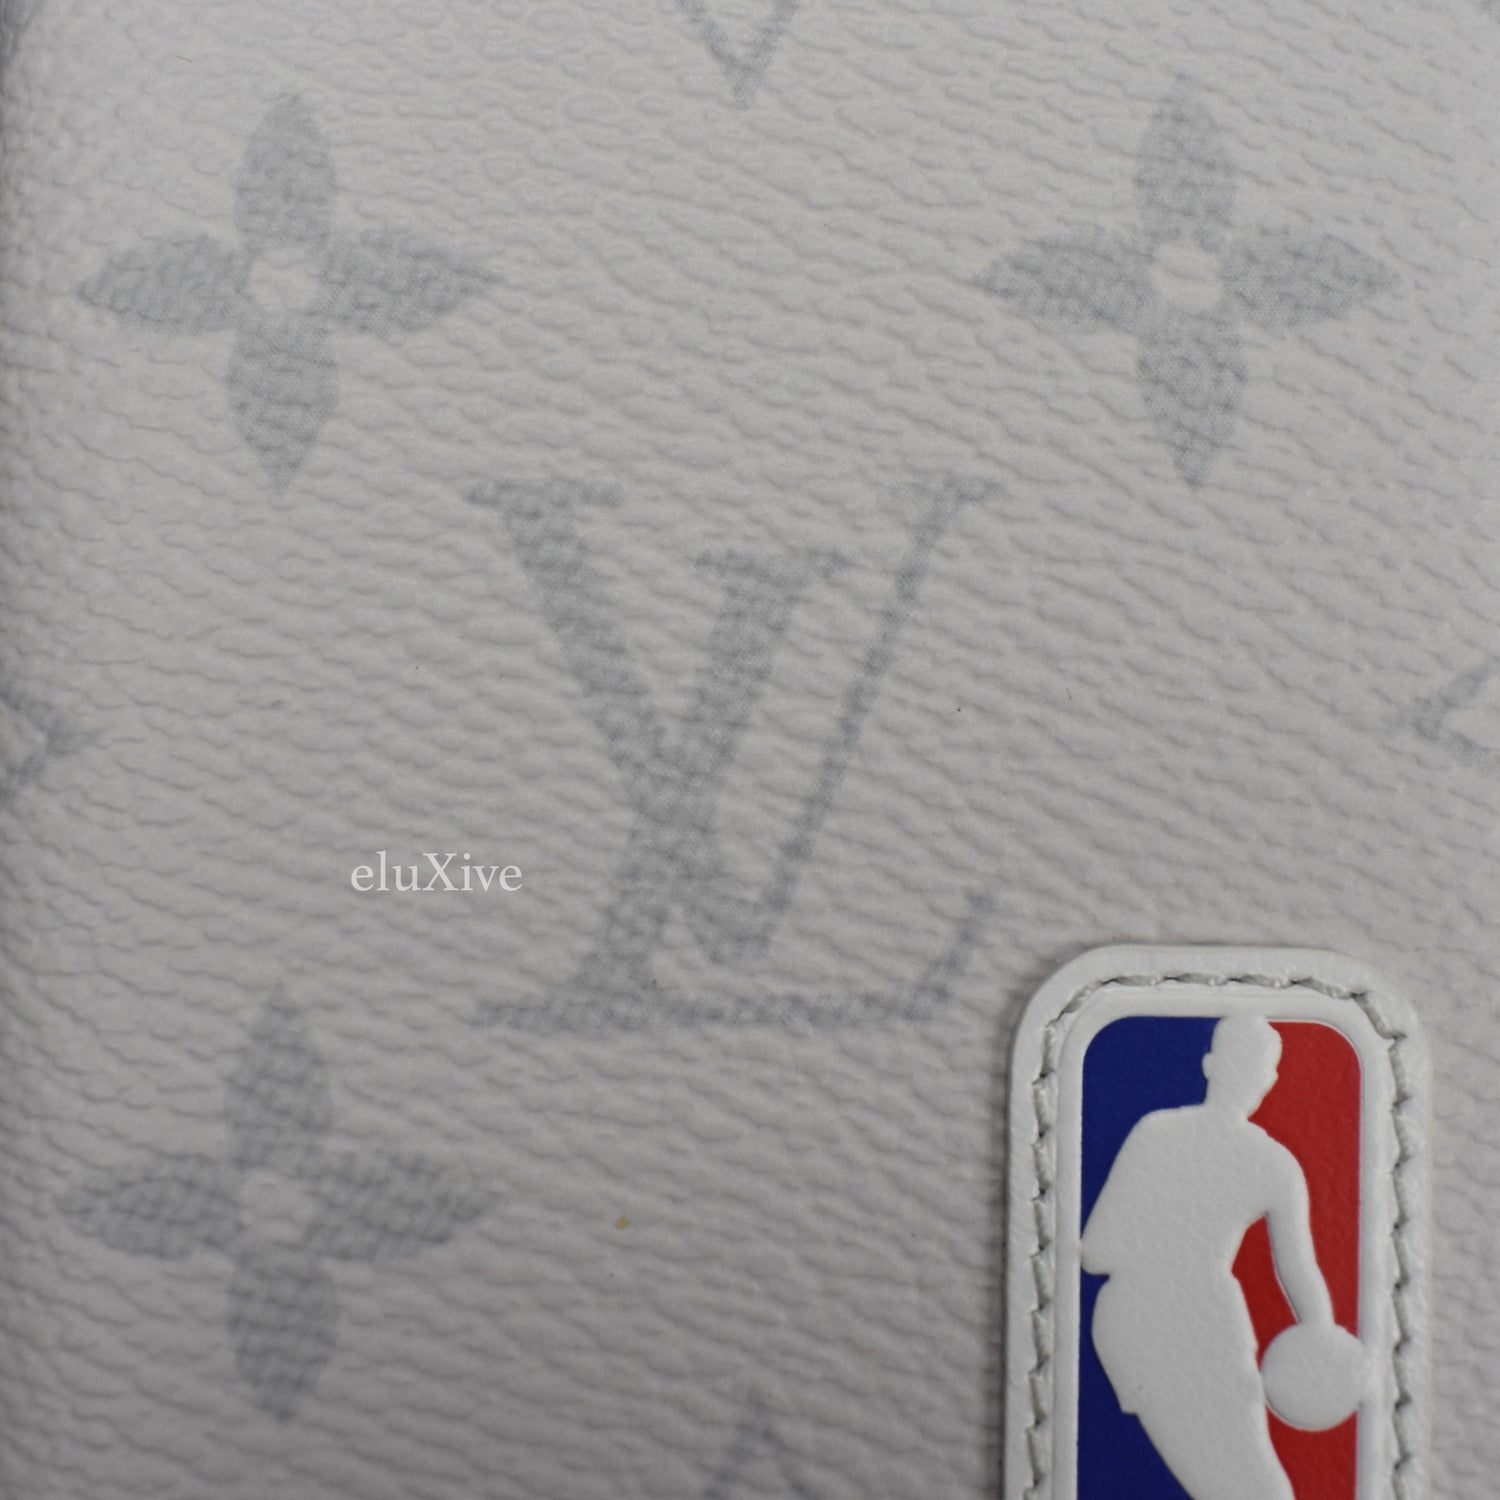 Louis Vuitton Bag LV xNBA Virgil Abloh Pocket Organizer Wallet